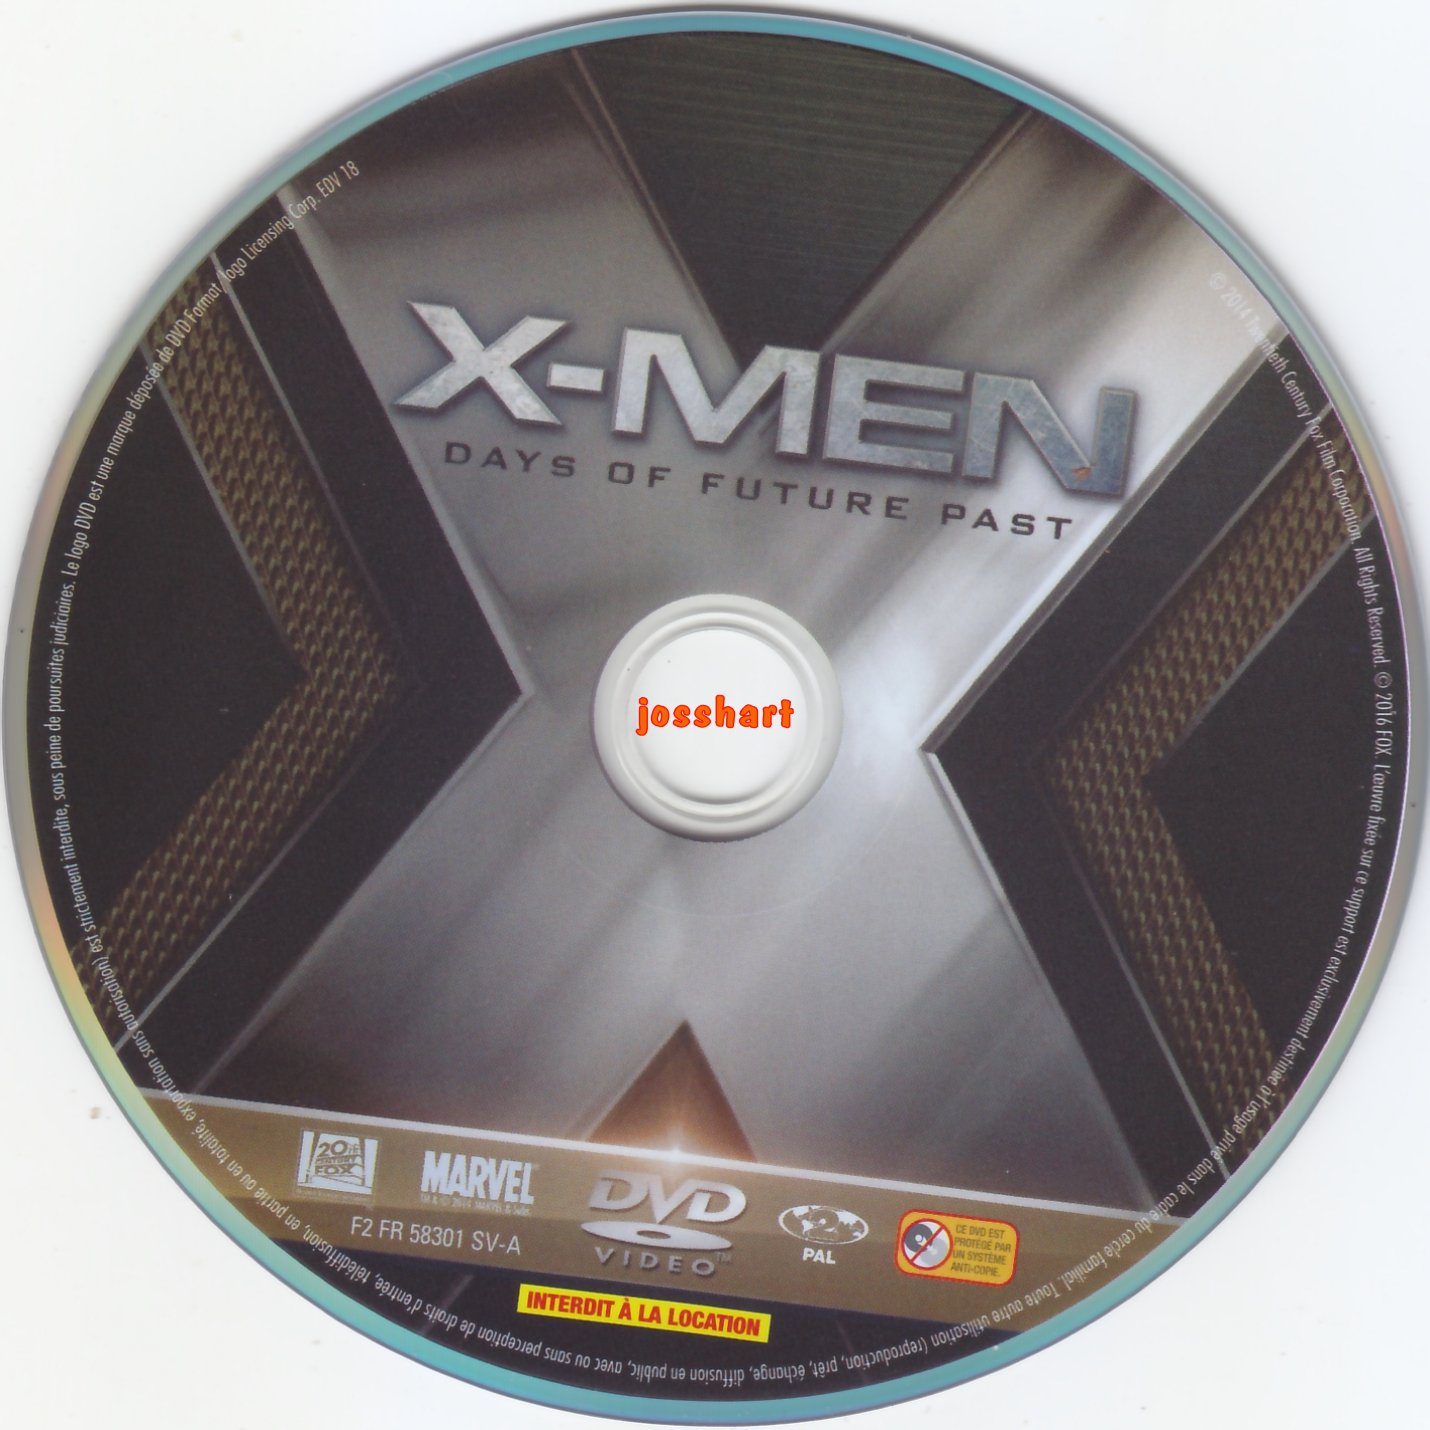 X Men Days of Future Past